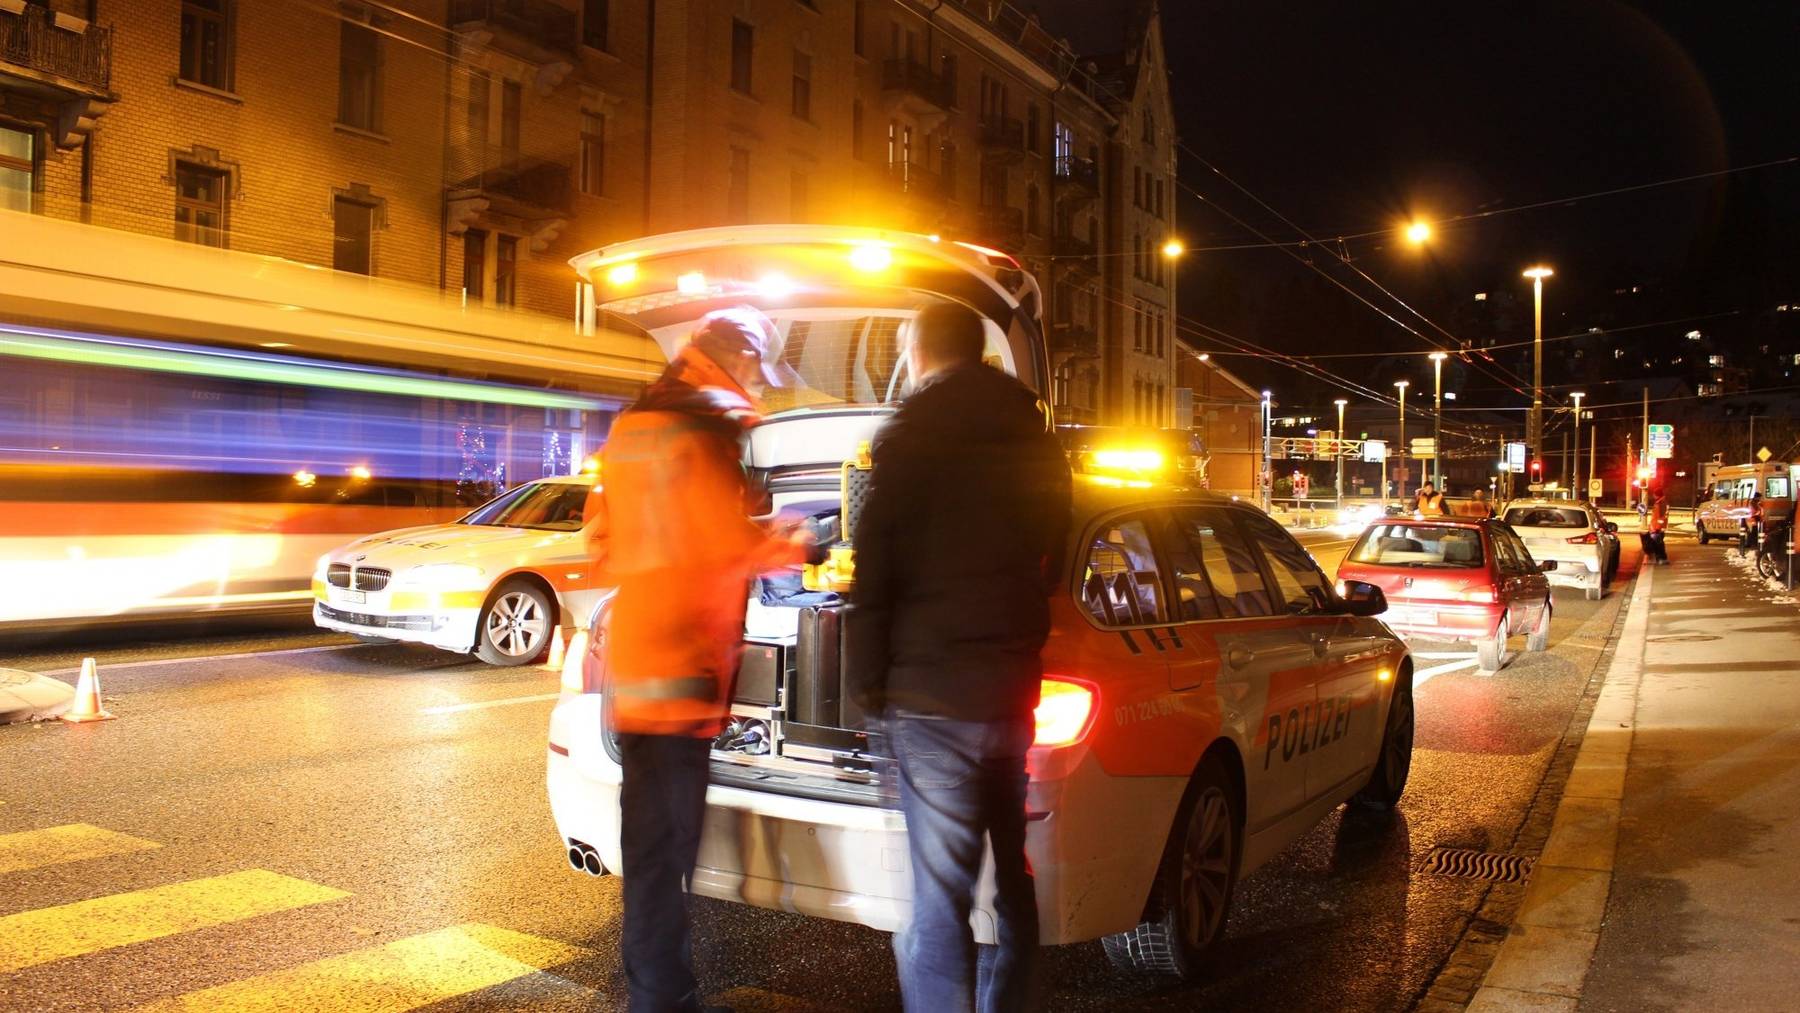 Nächtliche Kontrolle in St.Gallen, die Polizei erwischt am Wochenende immer wieder berauschte Fahrer. (Symbolbild)